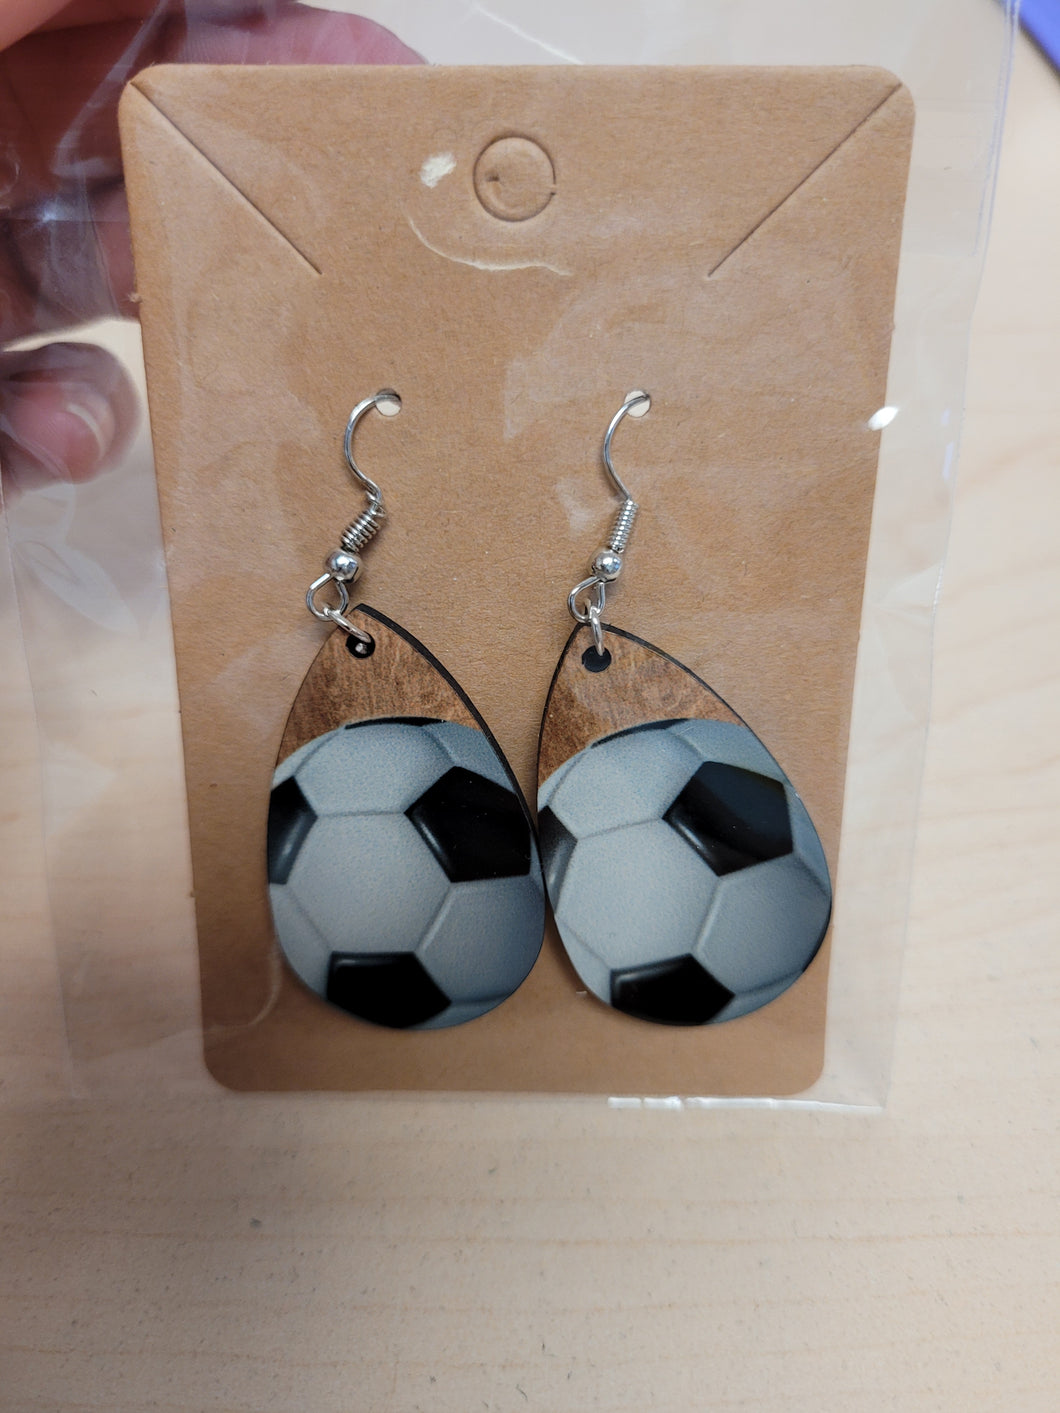 Soccer Ball Earrings